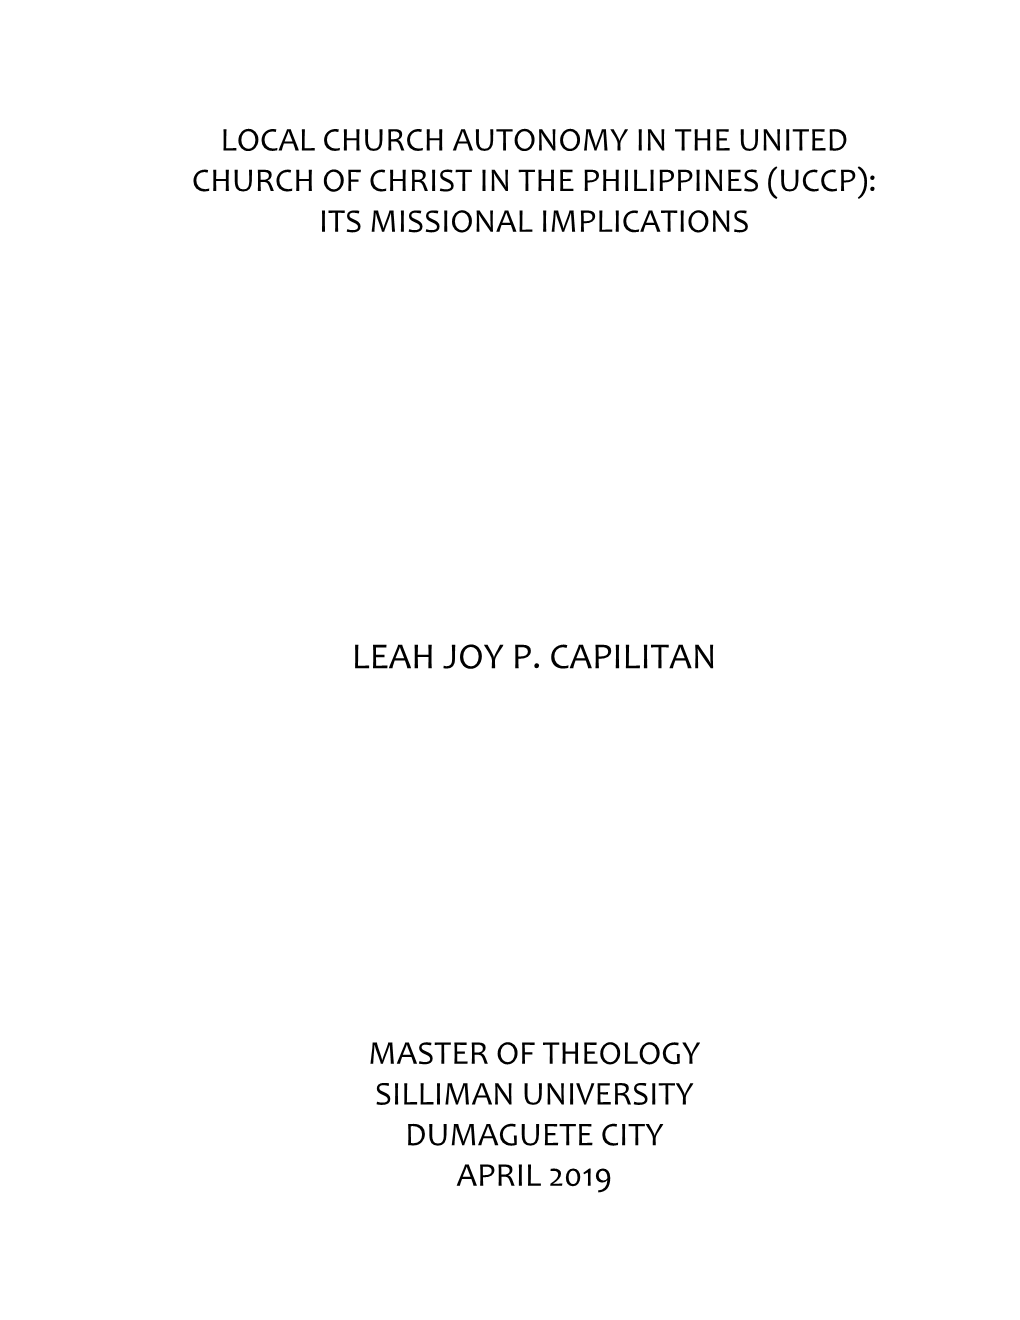 Leah Joy P. Capilitan